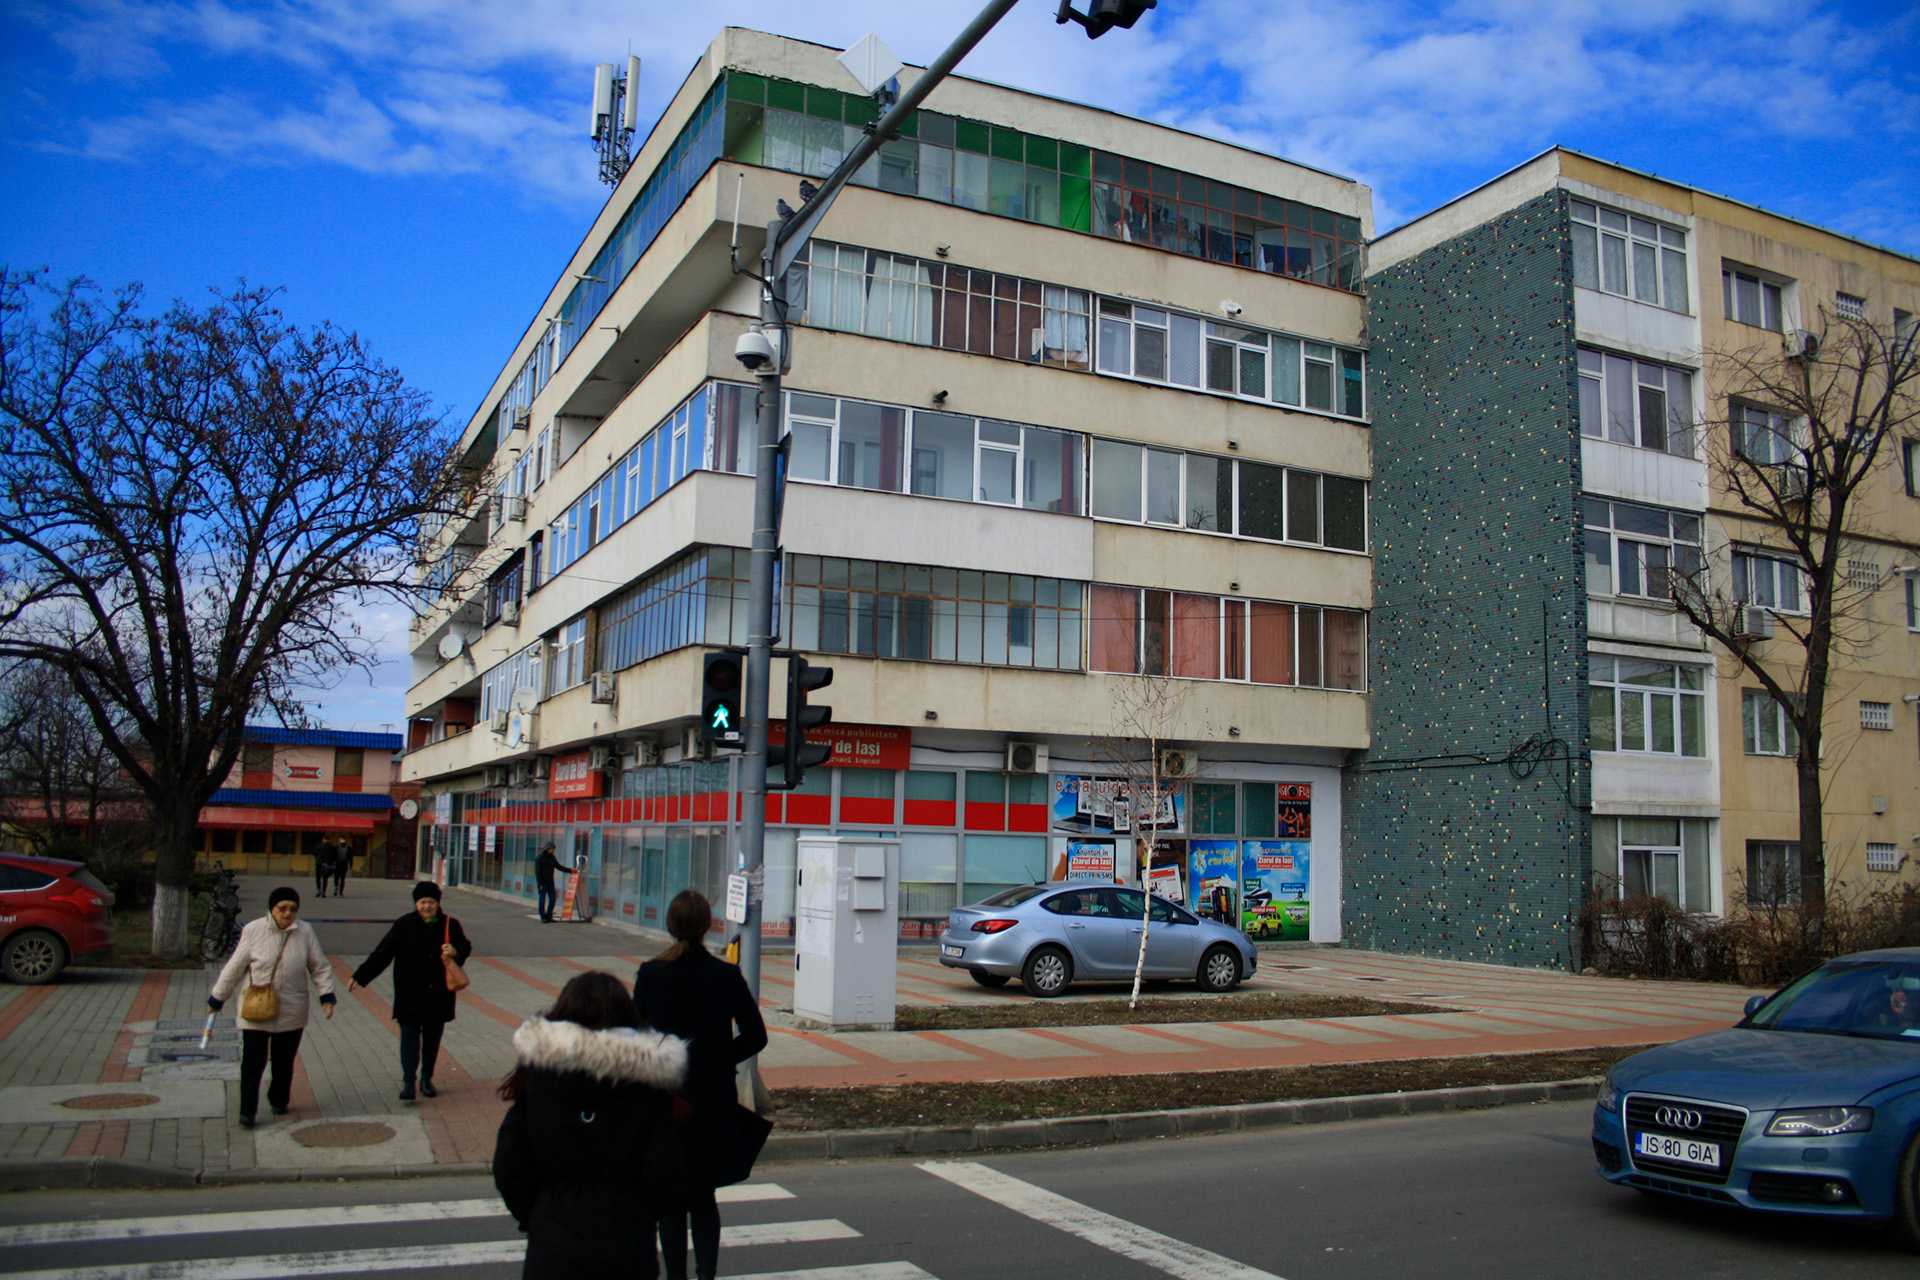 Decorație în mozaic pe fațada unui bloc de locuințe, situat pe Bulevardul Nicolae Iorga nr. 35, lângă Gara Internațională Nicolina, Iași, 2019